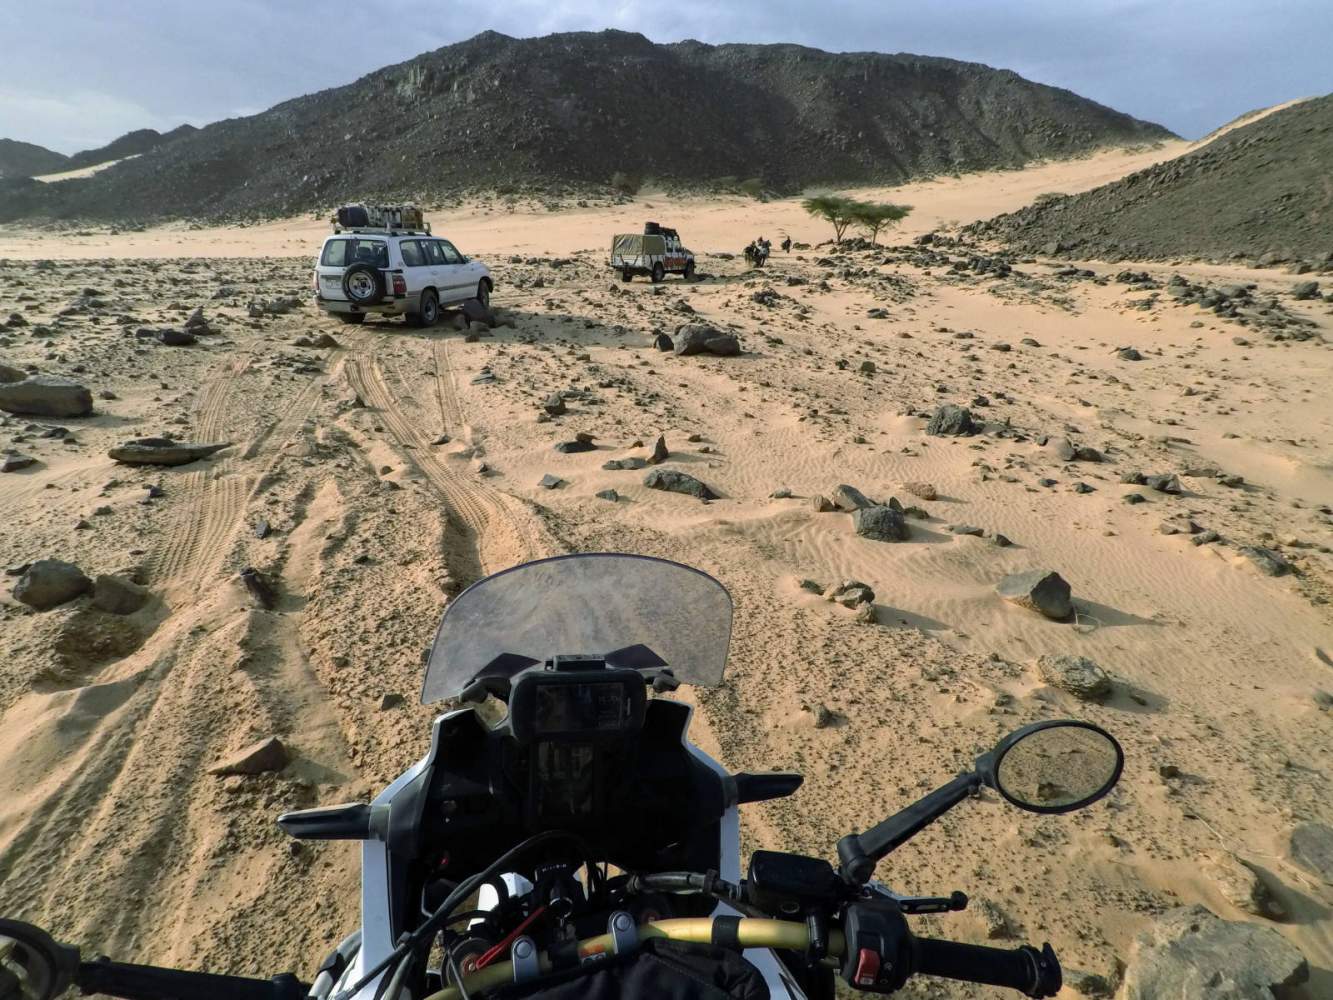 Mit dem Motorrad und Geländewagen offroad durch Sand